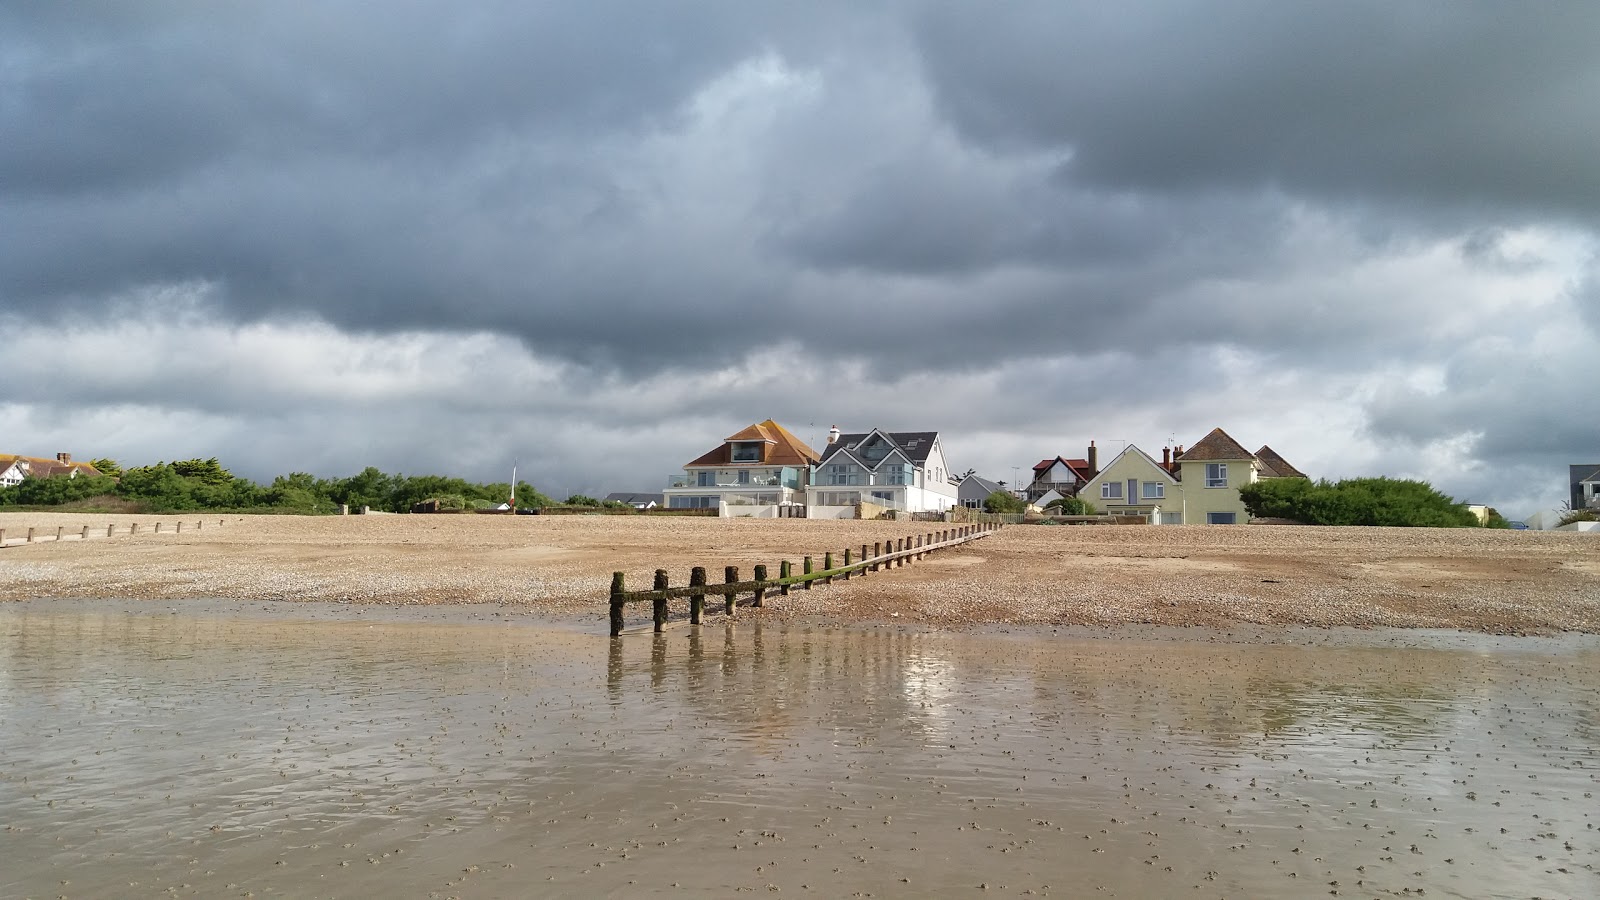 Φωτογραφία του East Preston beach με μακρά ευθεία ακτή